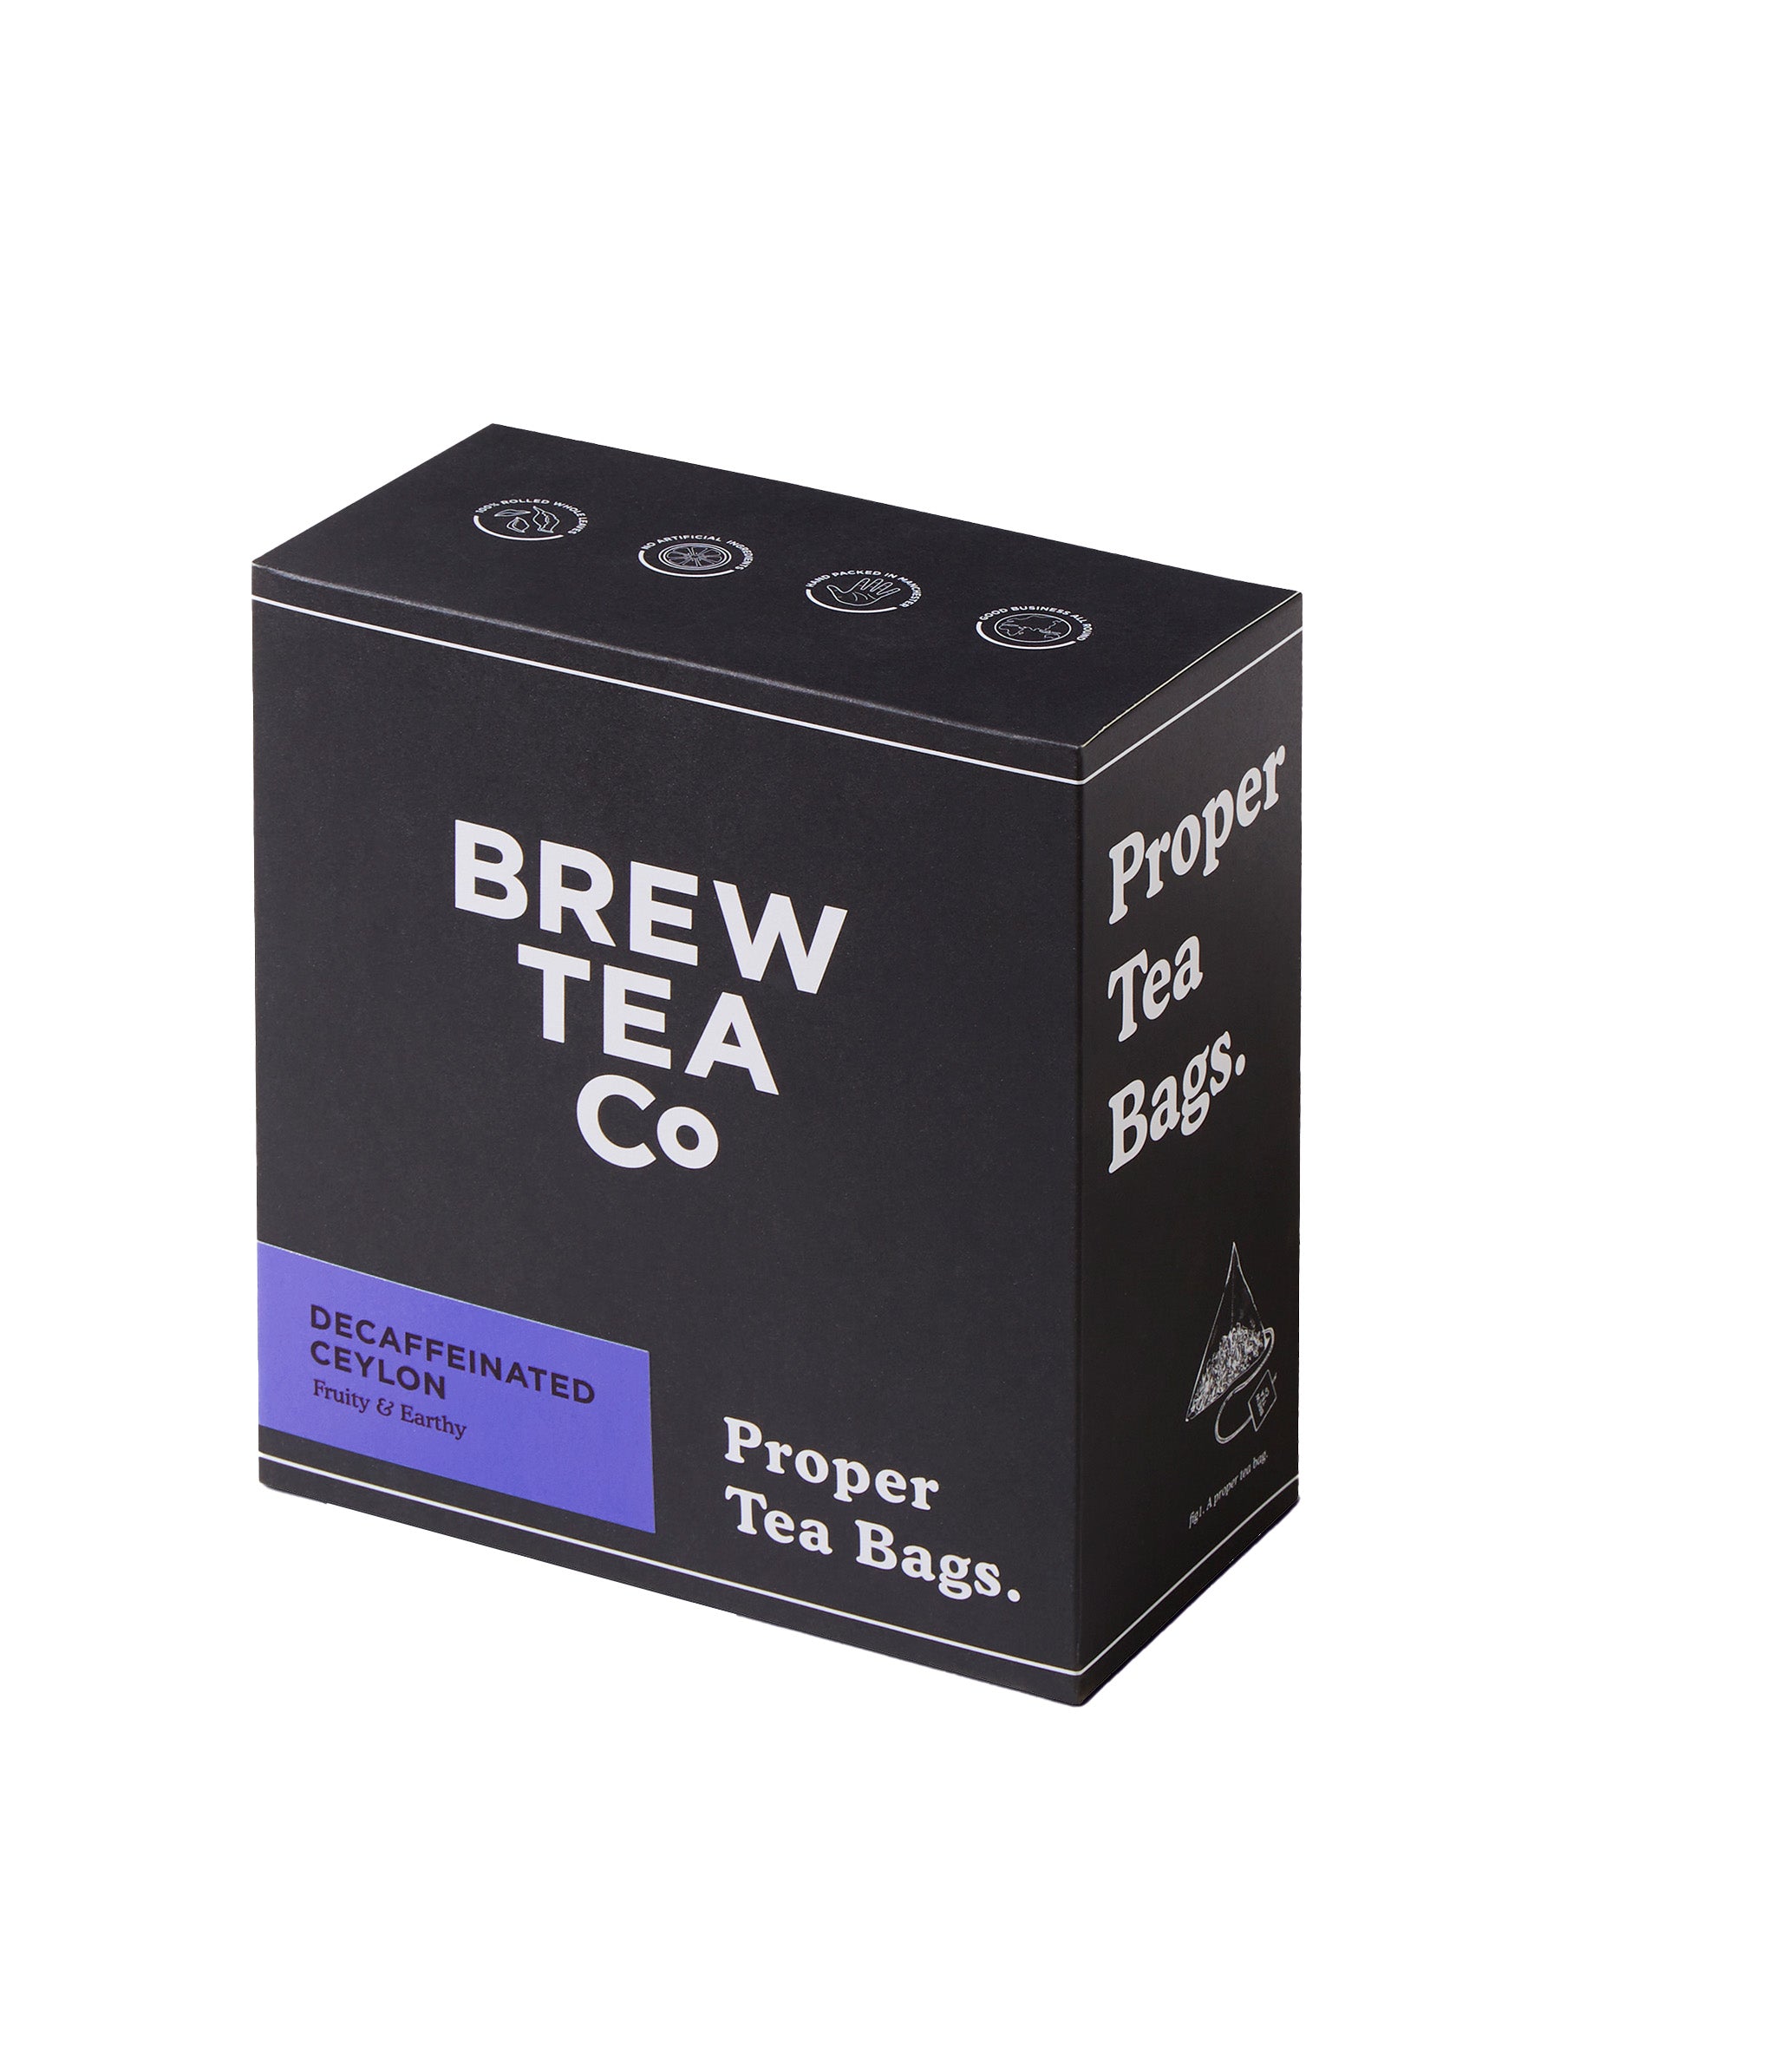 BREW TEA TAGGED TEA BAGS DECAF X 100